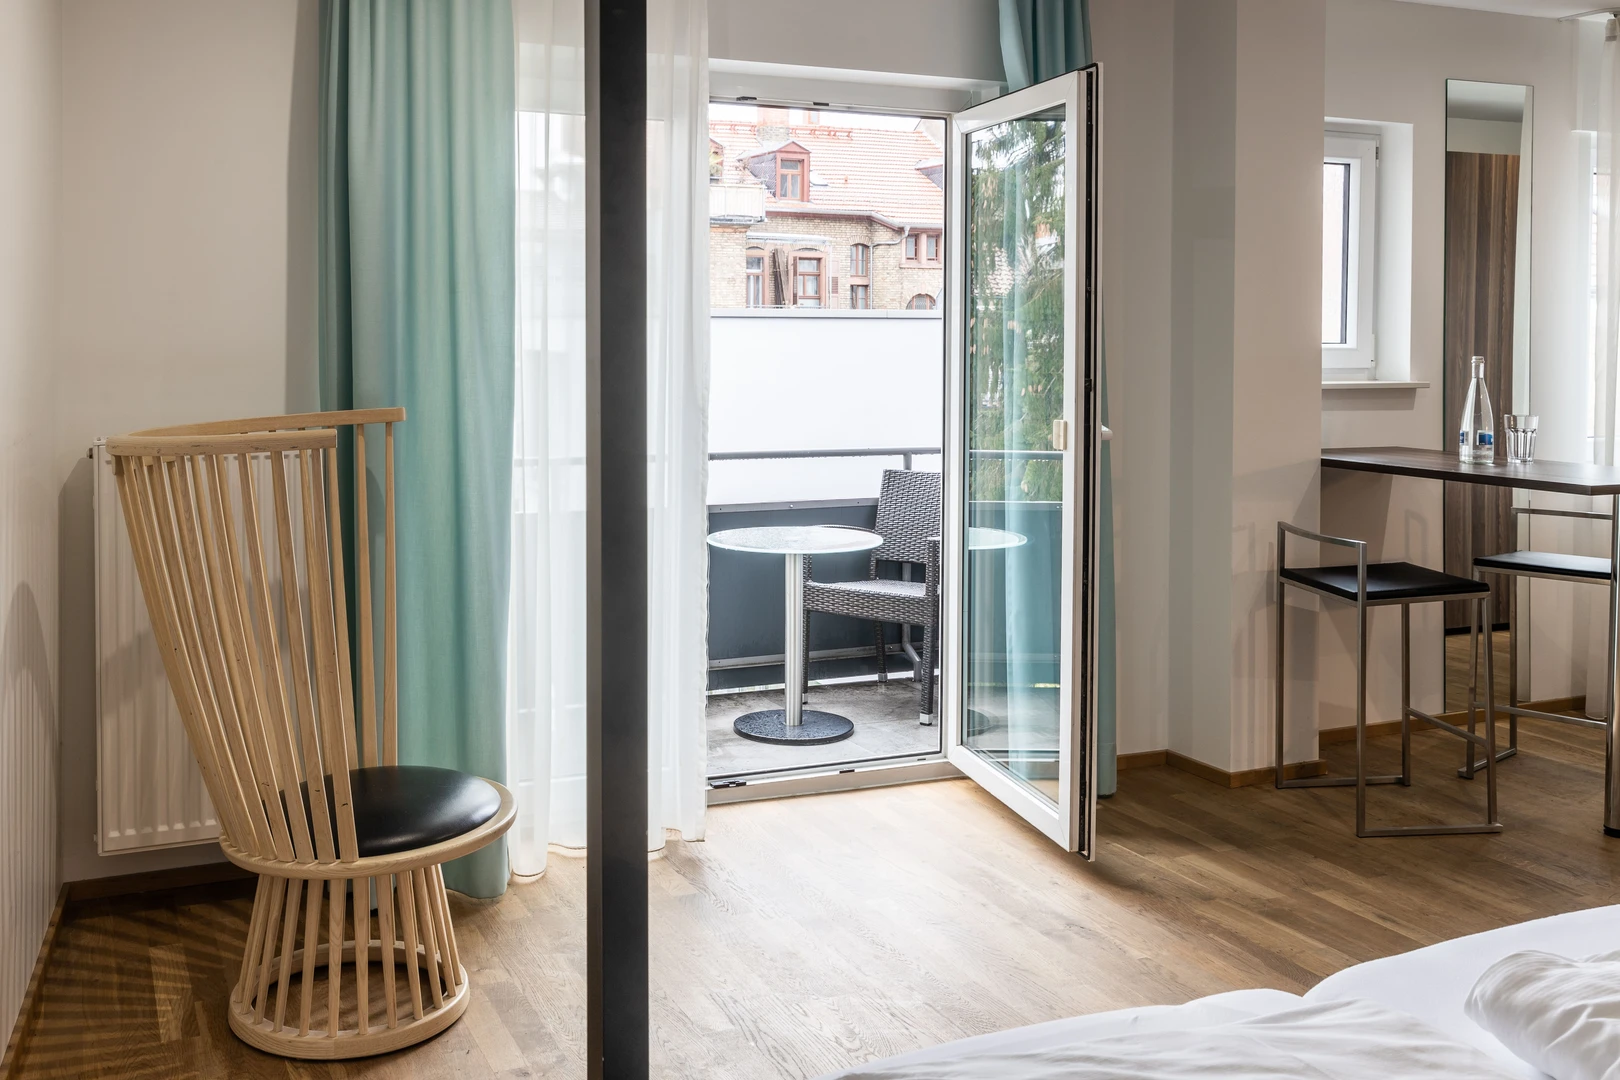 Alquiler de habitación en piso compartido en Heidelberg